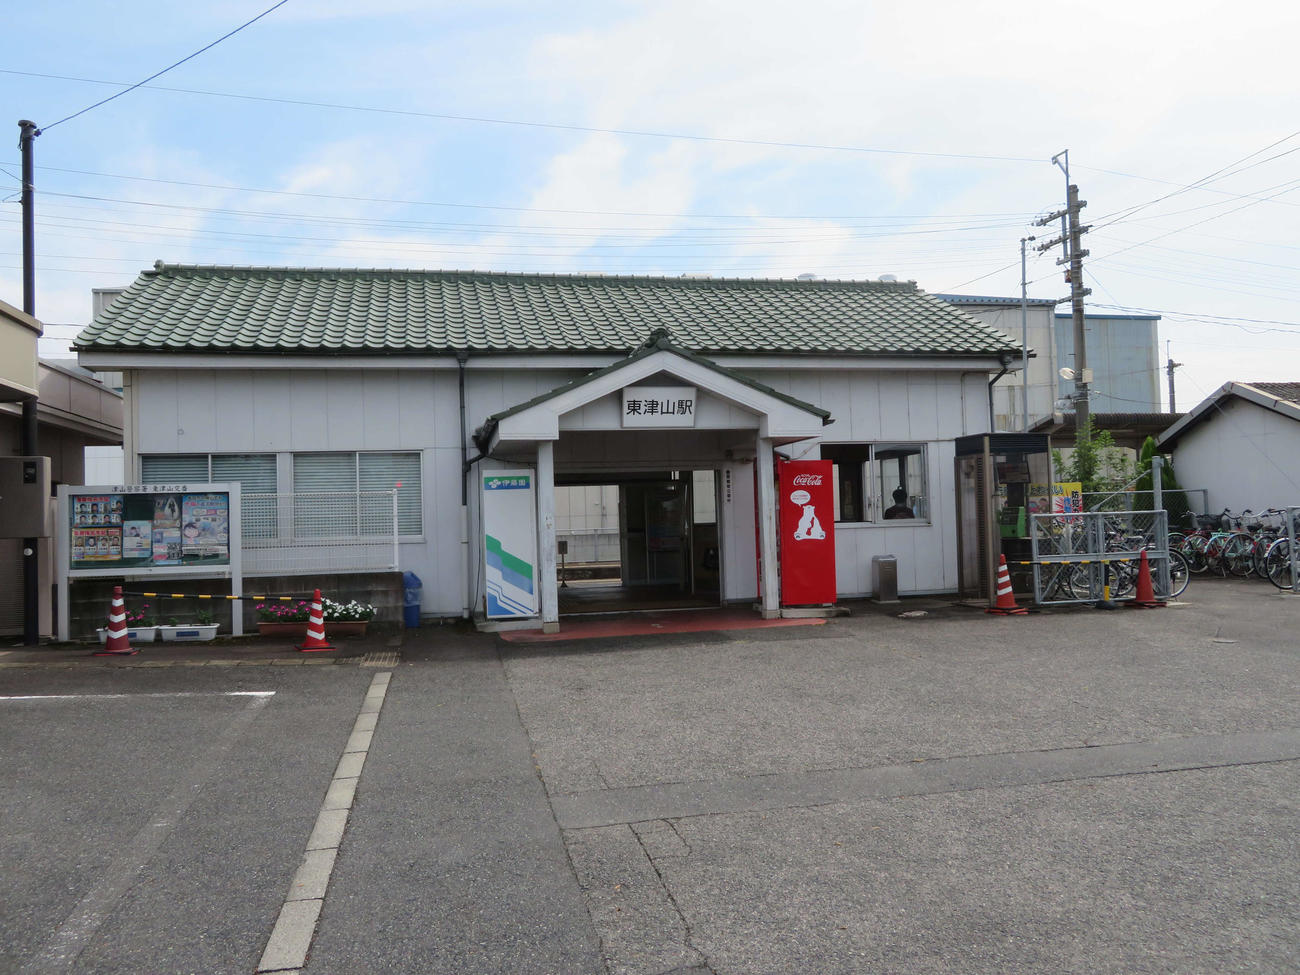 〈18〉姫新線と因美線の乗換駅である東津山駅